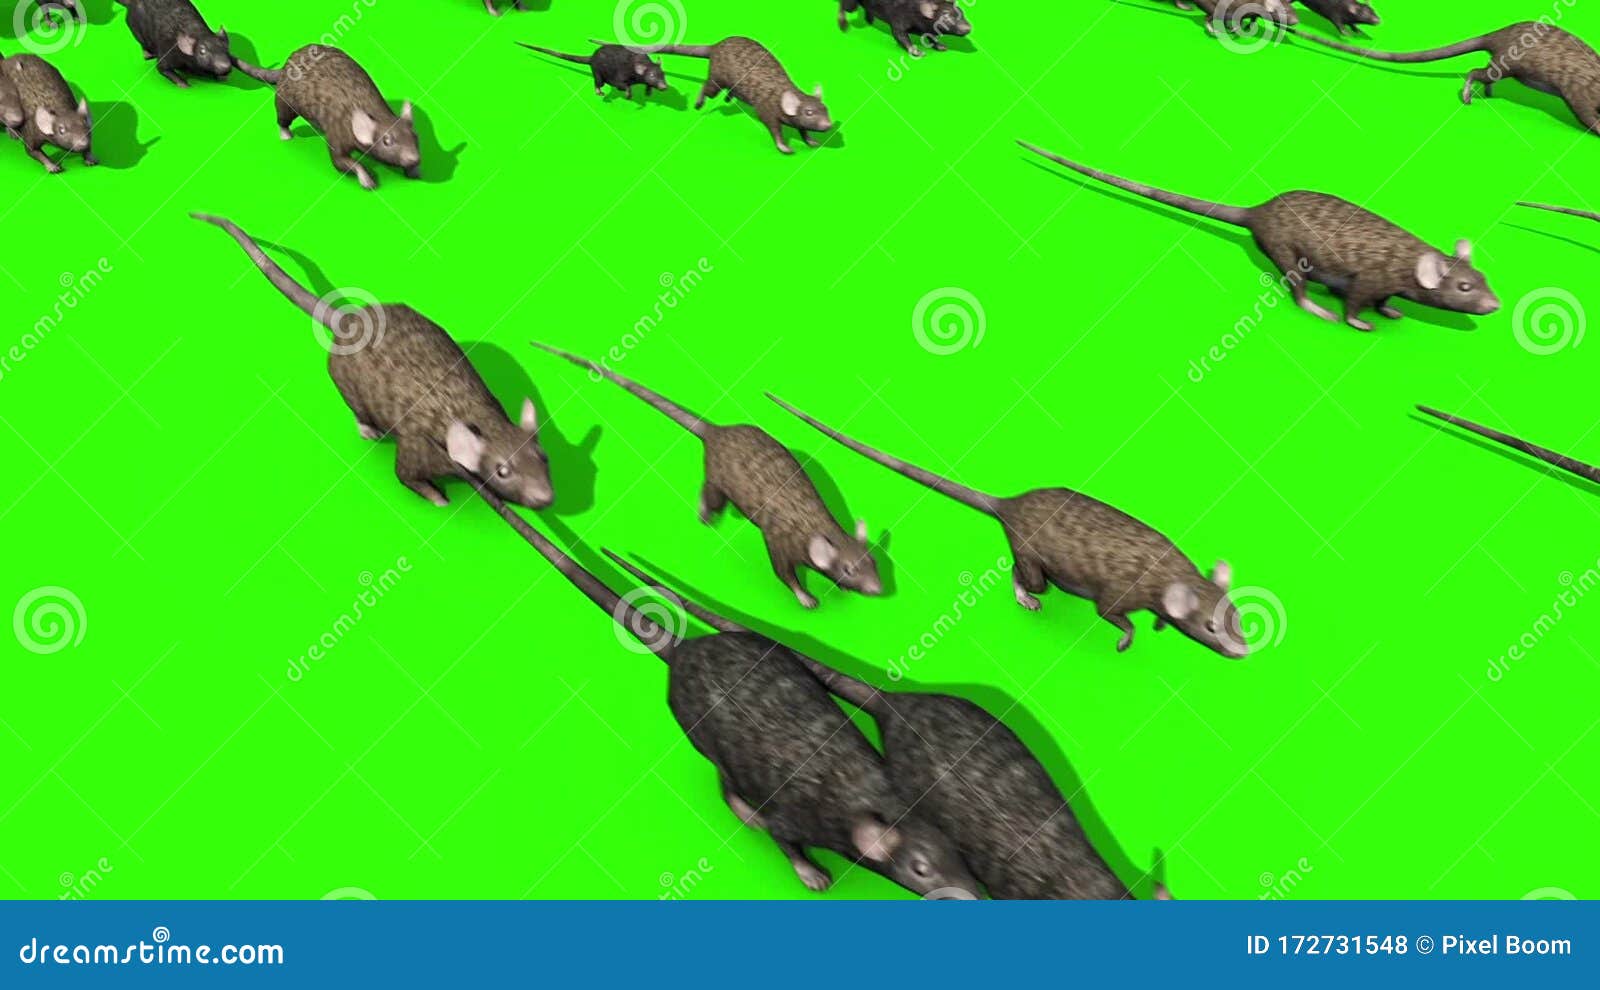 Мышки бегают видео для кошек и пищат. Иллюстрации Нашествие крыс. Игра про Нашествие крыс.